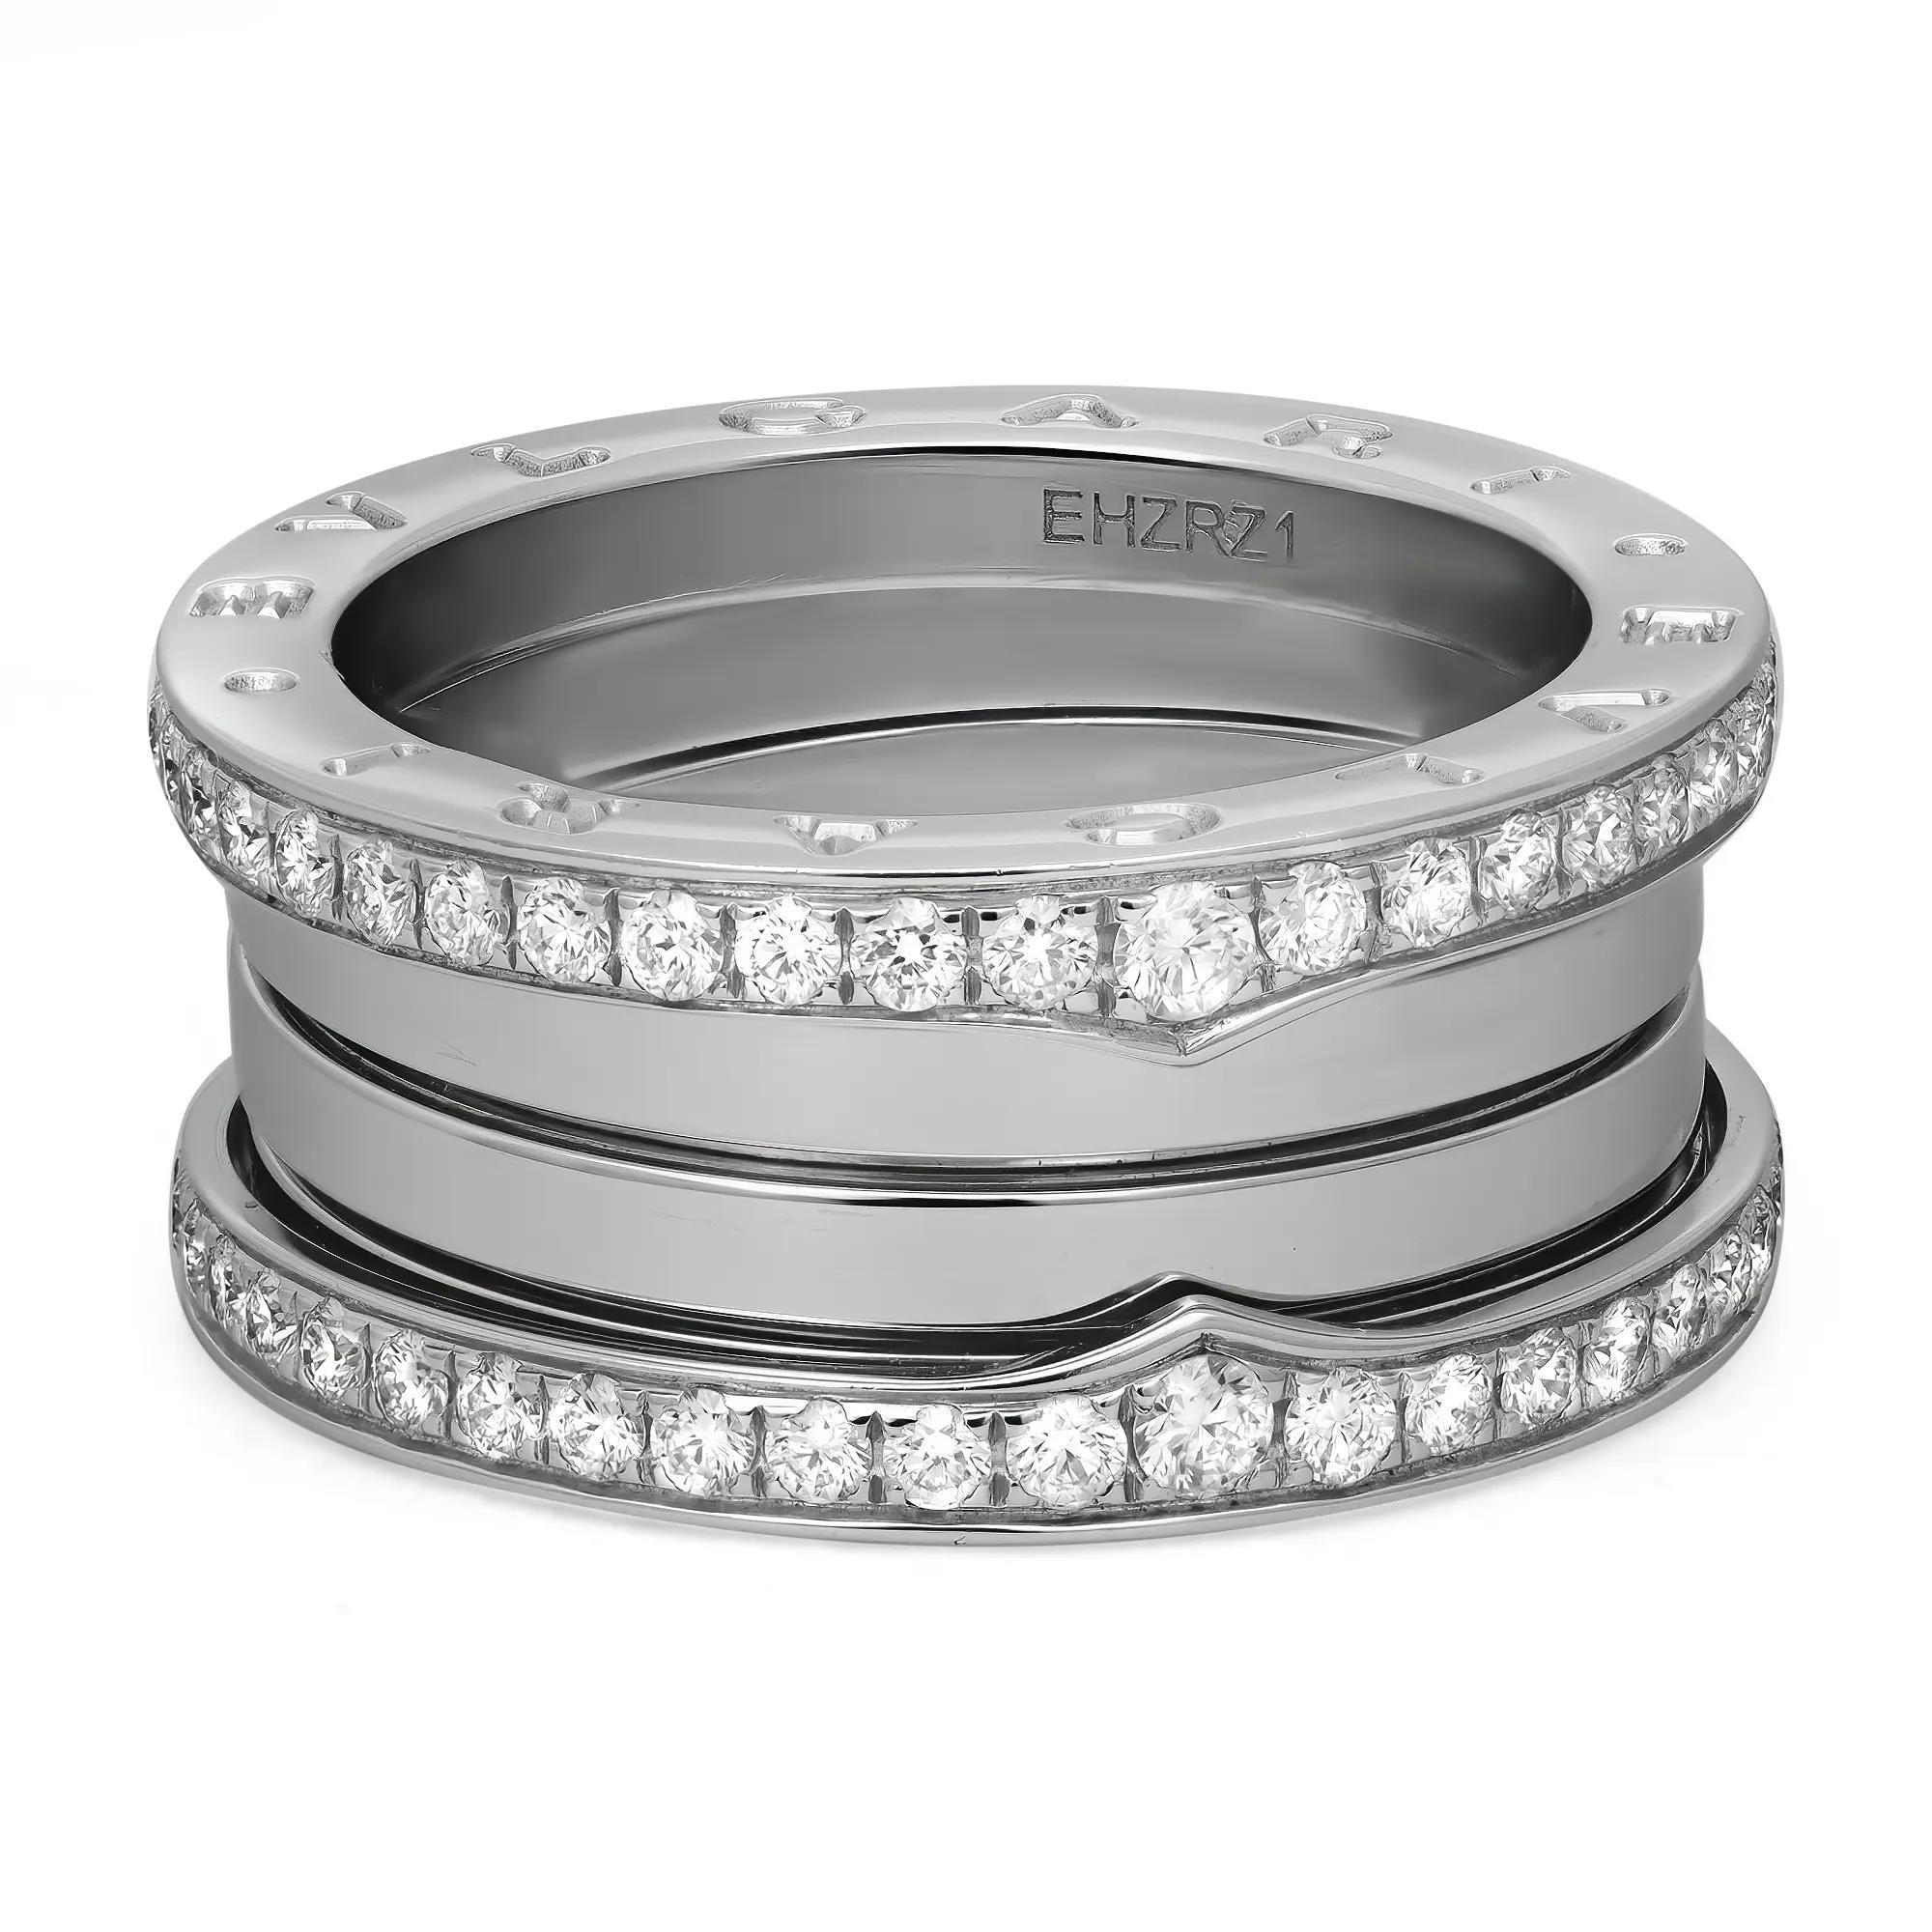 Dieser wunderschöne Ring aus der Bvlgari B.zero1 Kollektion mit vier Bändern ist aus glänzendem 18 Karat Weißgold gefertigt. Er zeichnet sich durch einen unverwechselbaren Spiralring mit vier Bändern aus, der an den Rändern mit runden Diamanten im